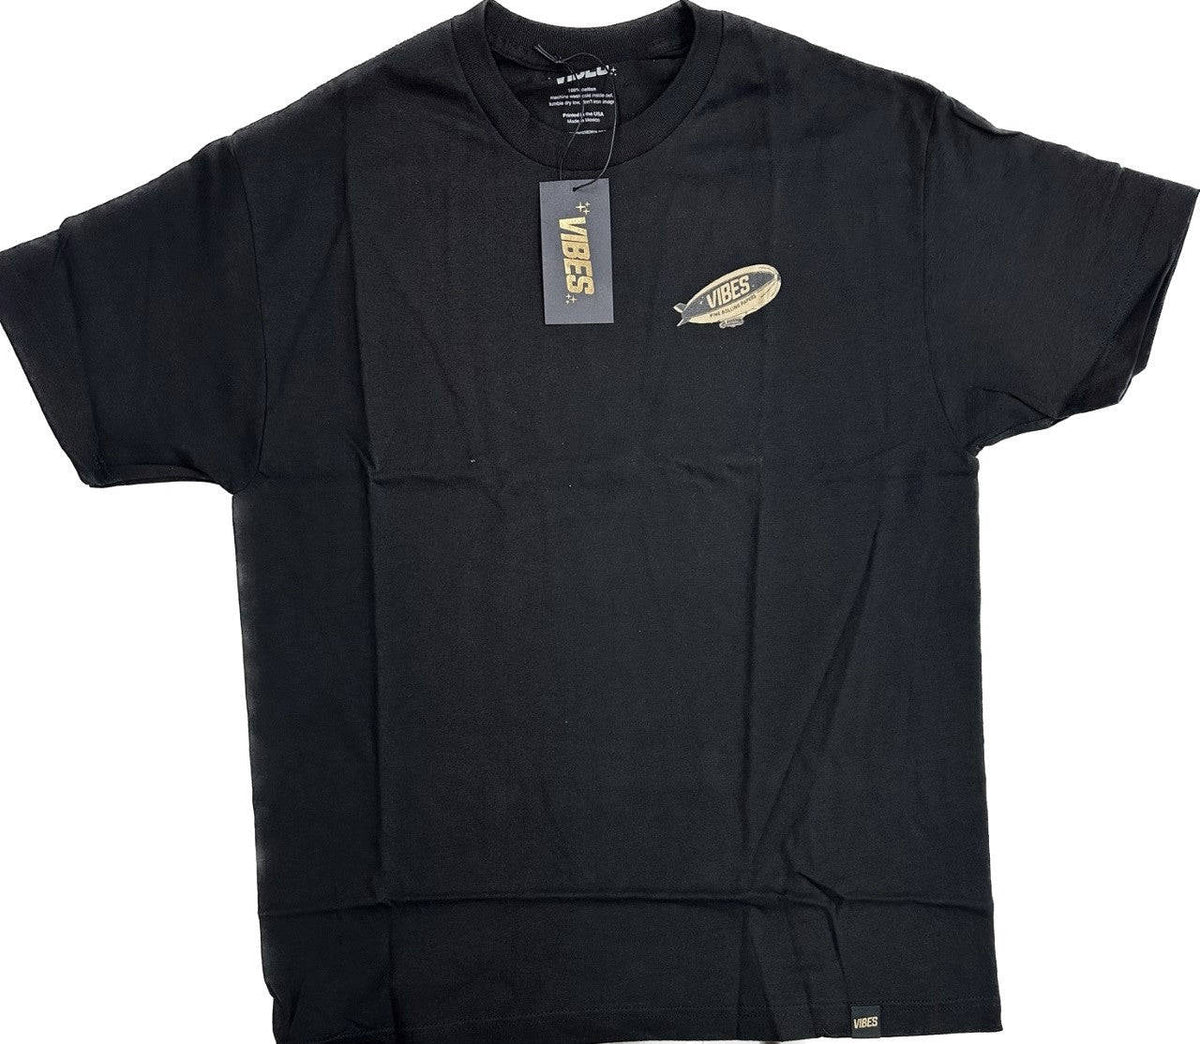 VIBES Black Sky High T-Shirt 2X-Large